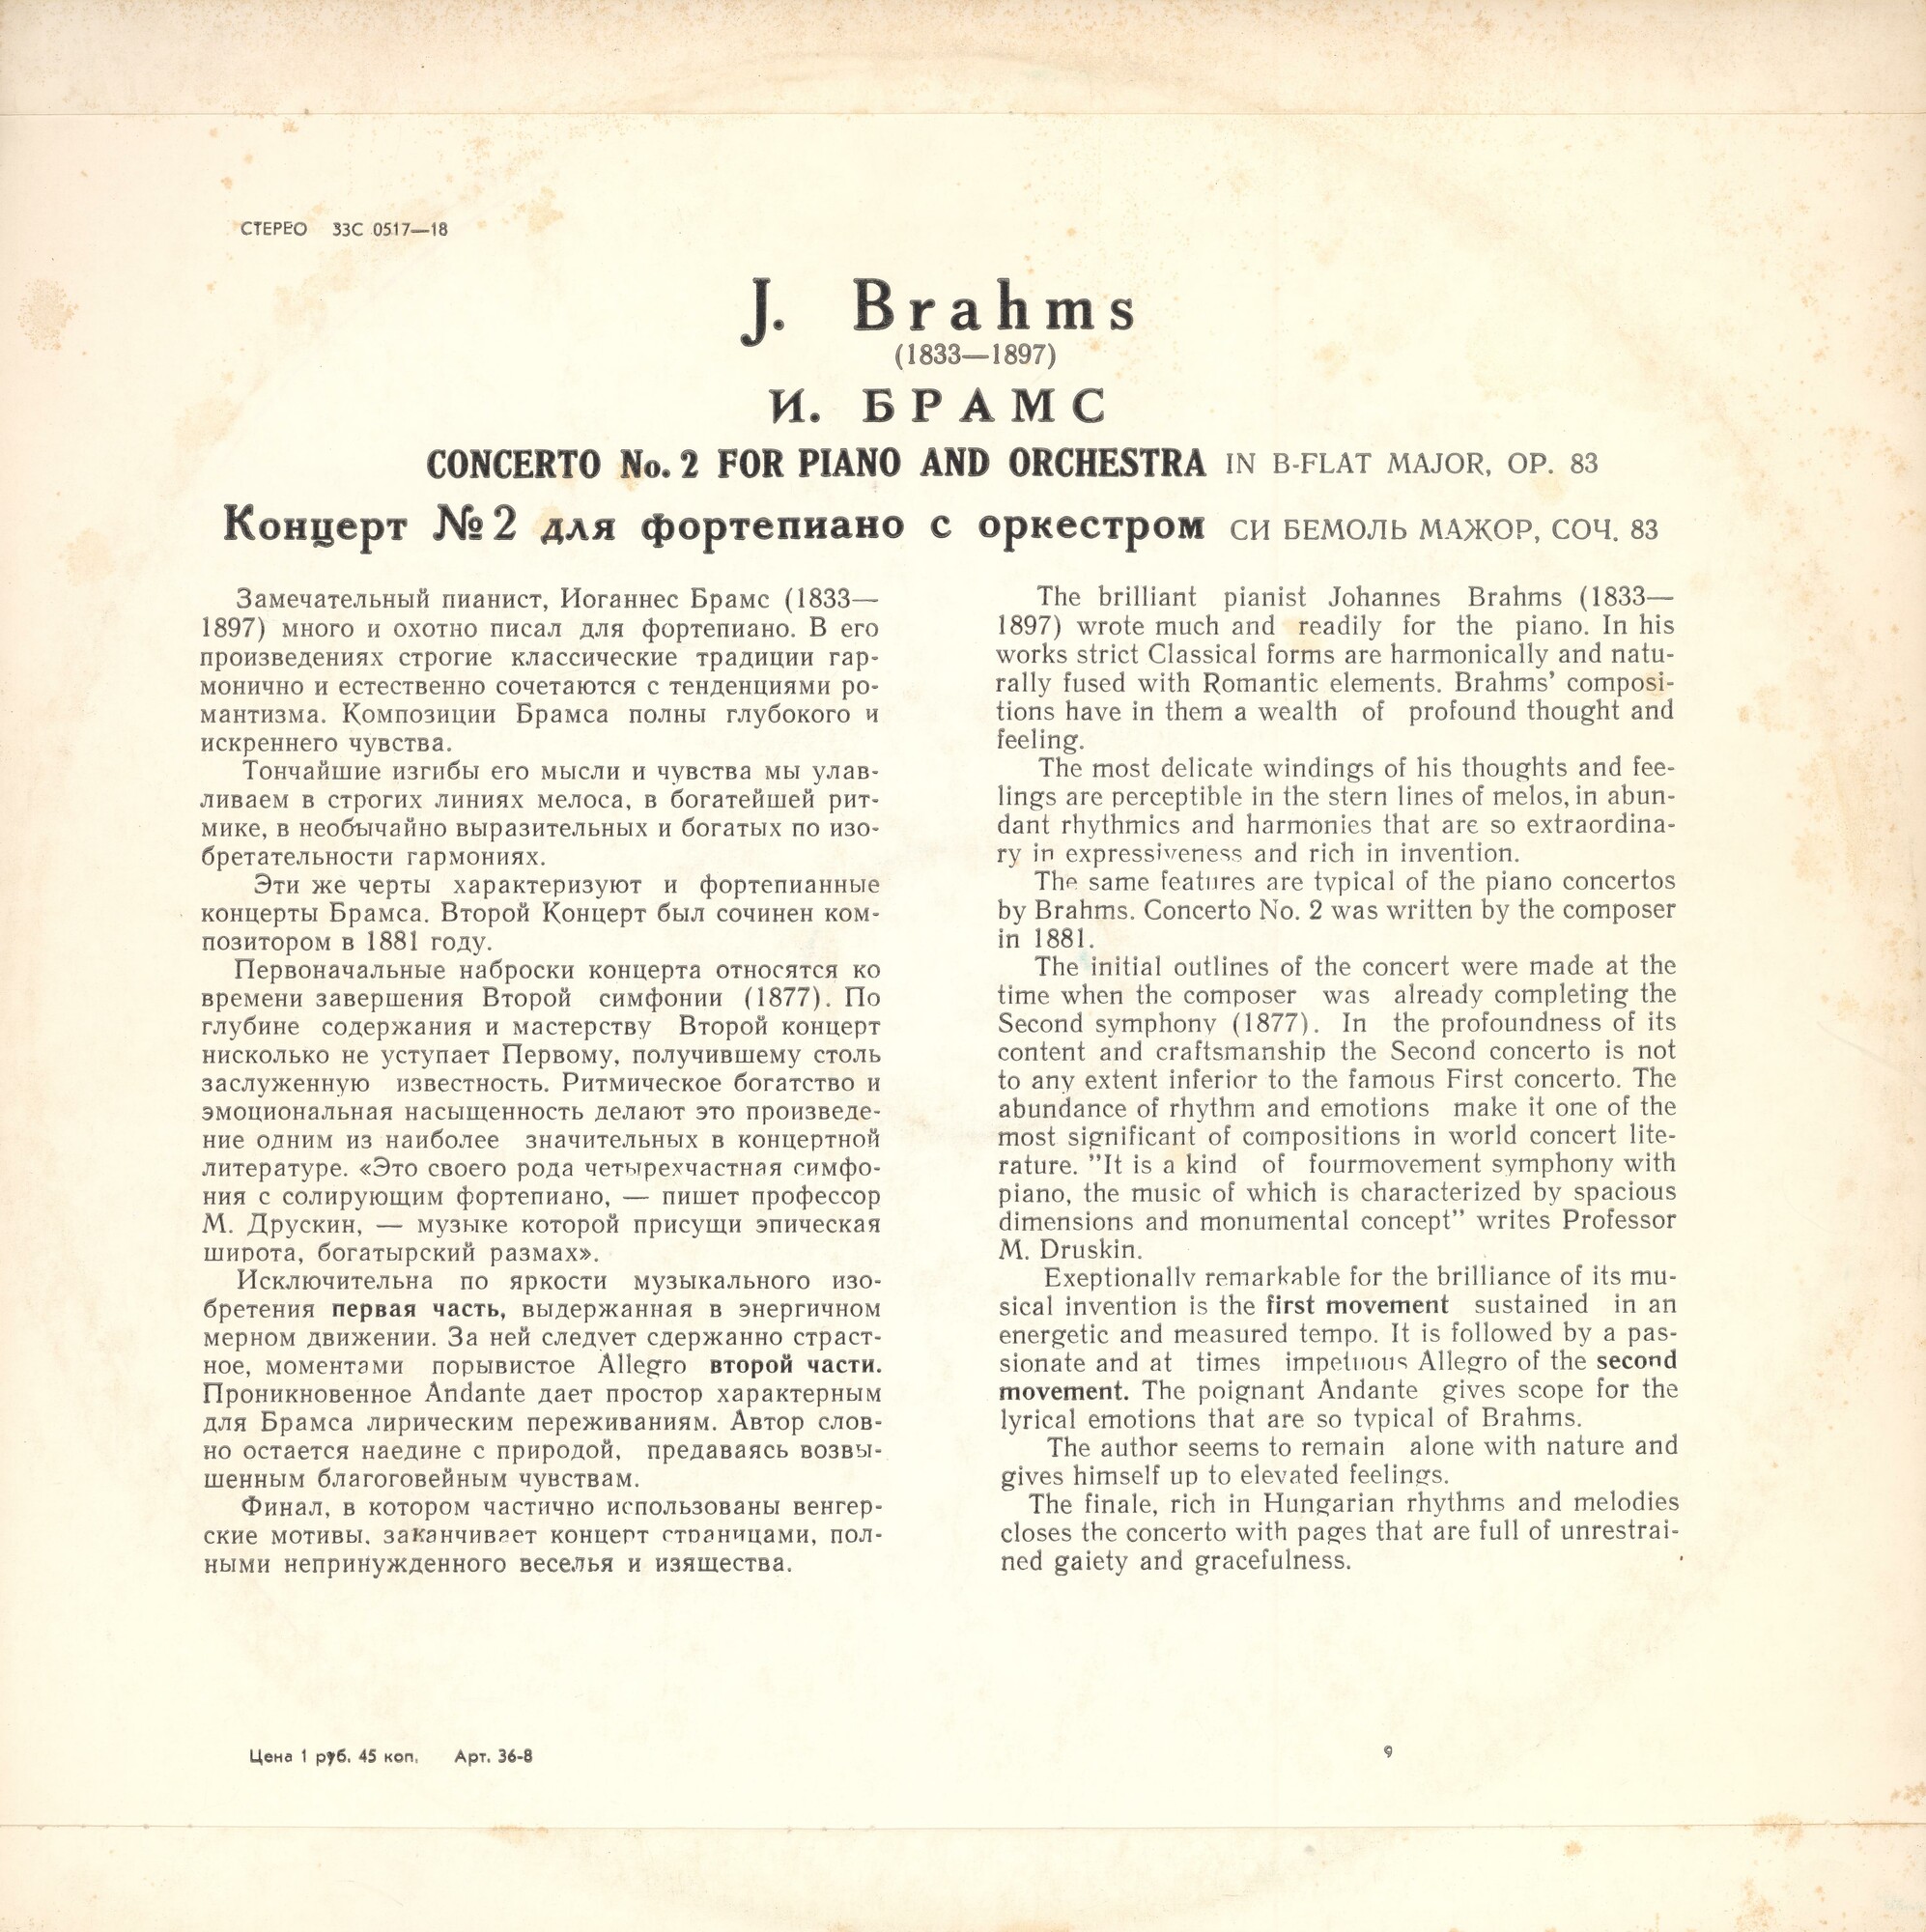 И. Брамс: Концерт № 2 для ф-но с оркестром (Э. Гилельс, Чикагский СО, дир. Ф. Райнер)